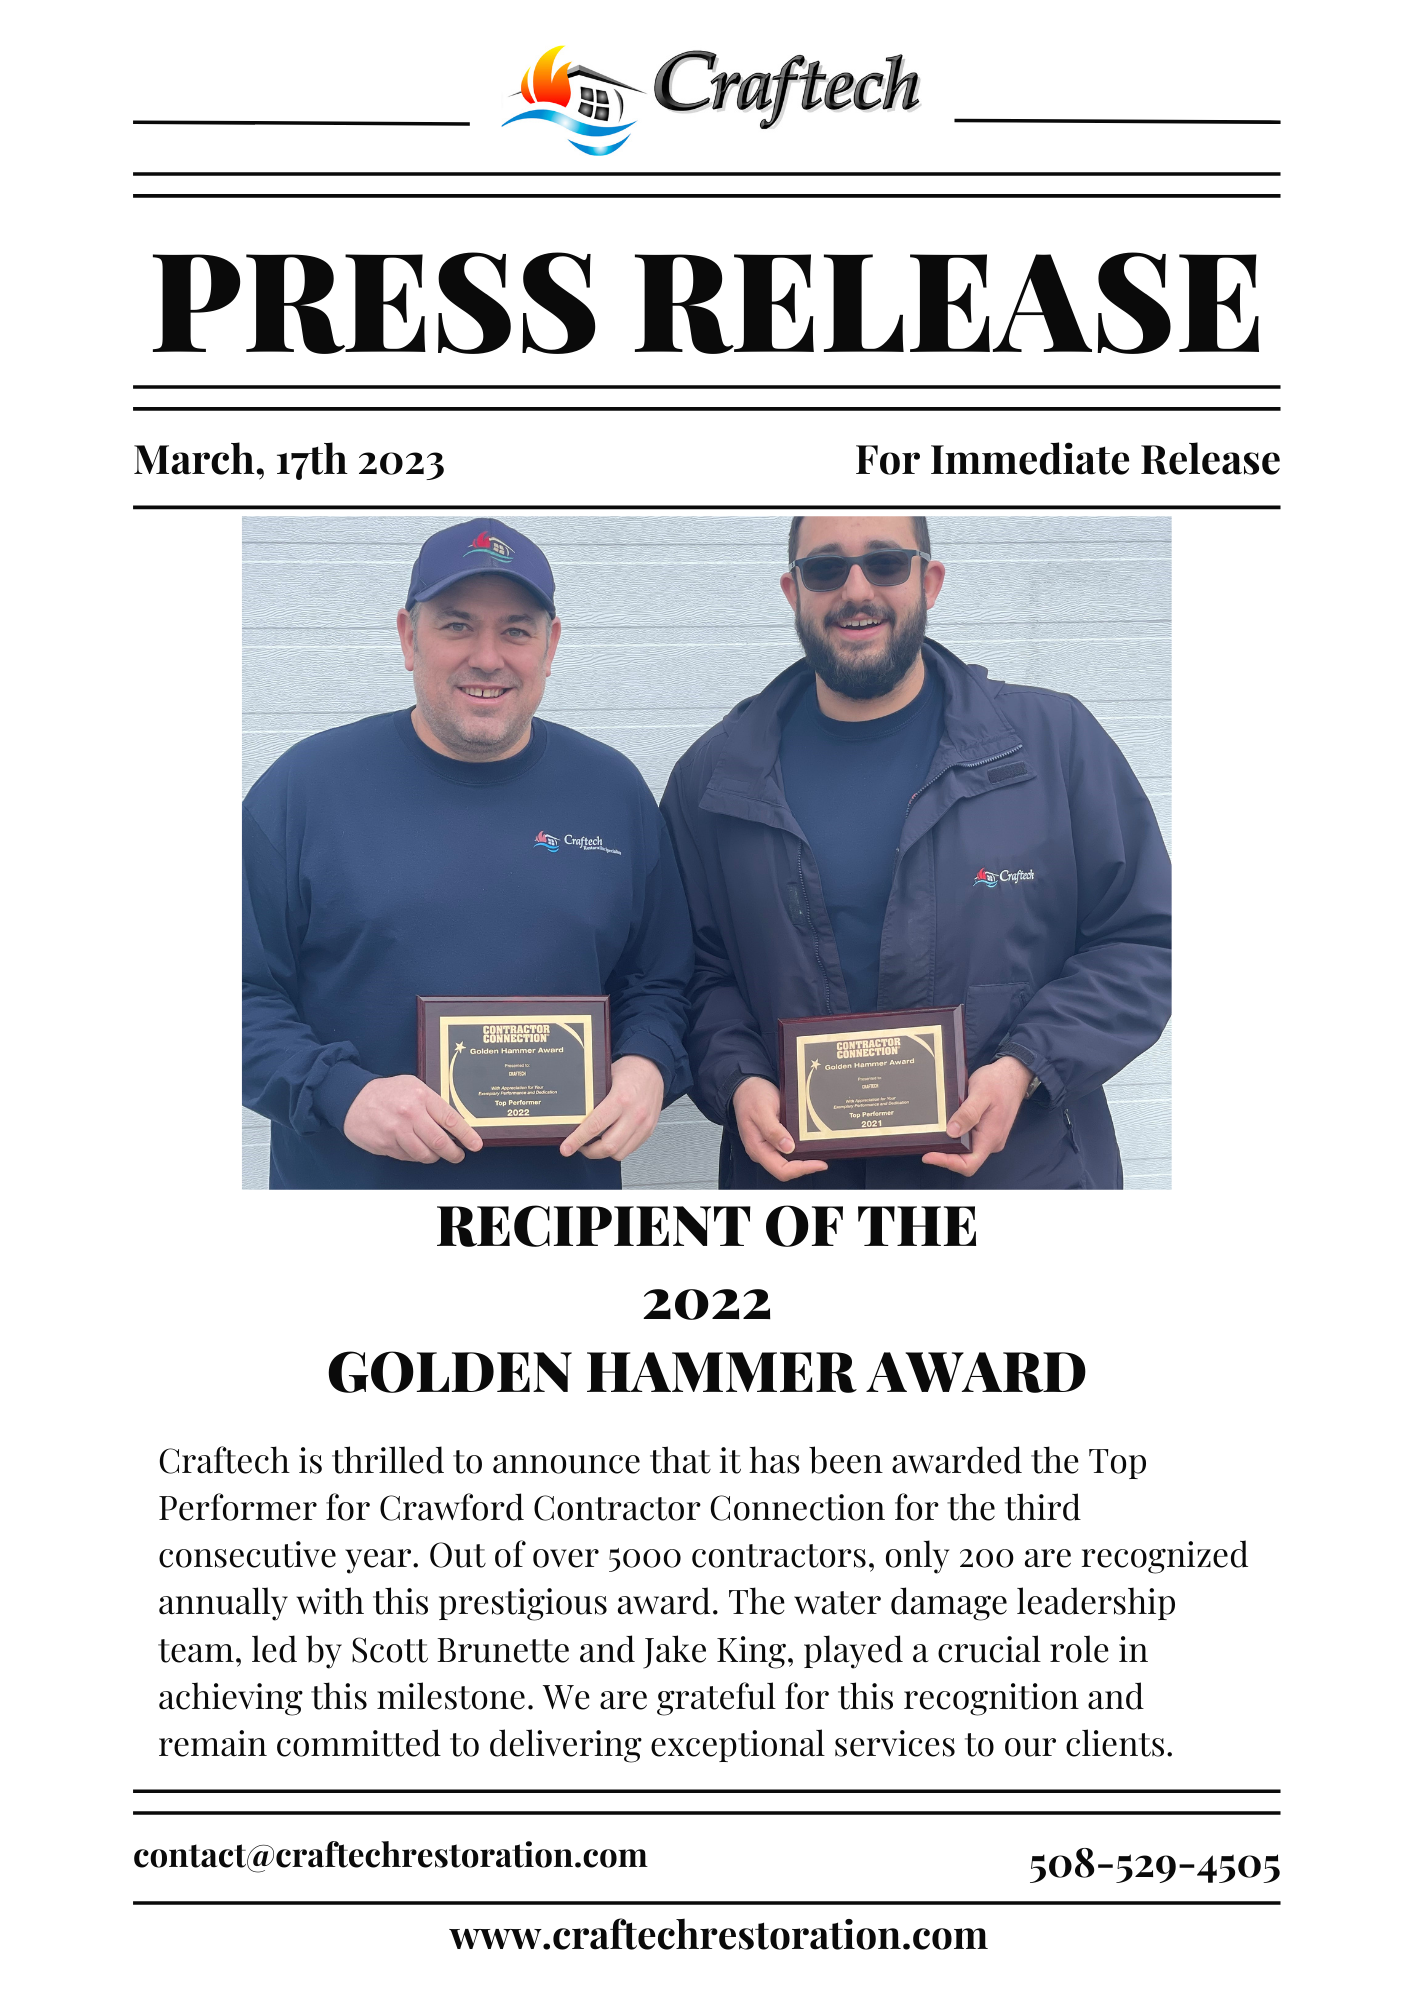 Press release for golden hammer award